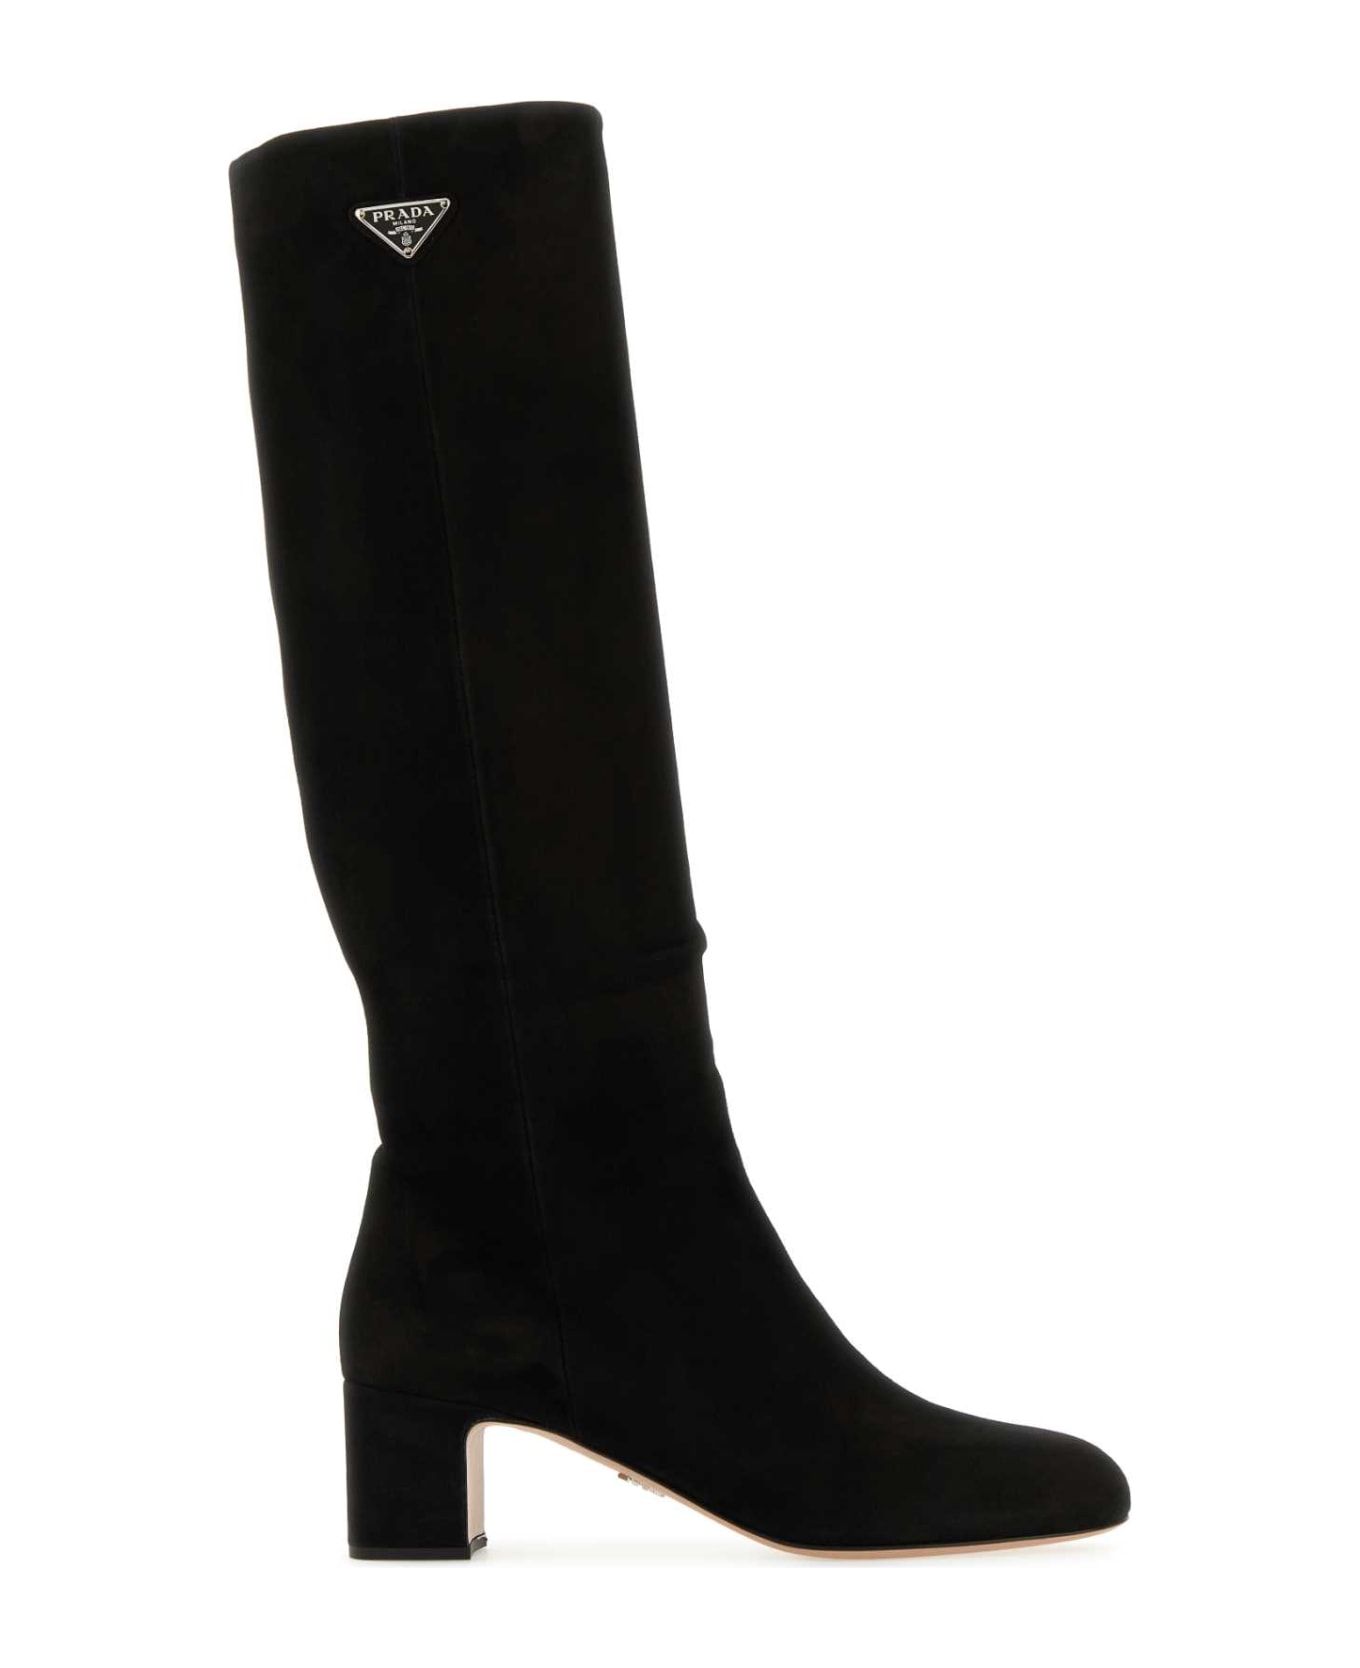 Prada Black Suede Boots - NERO ブーツ